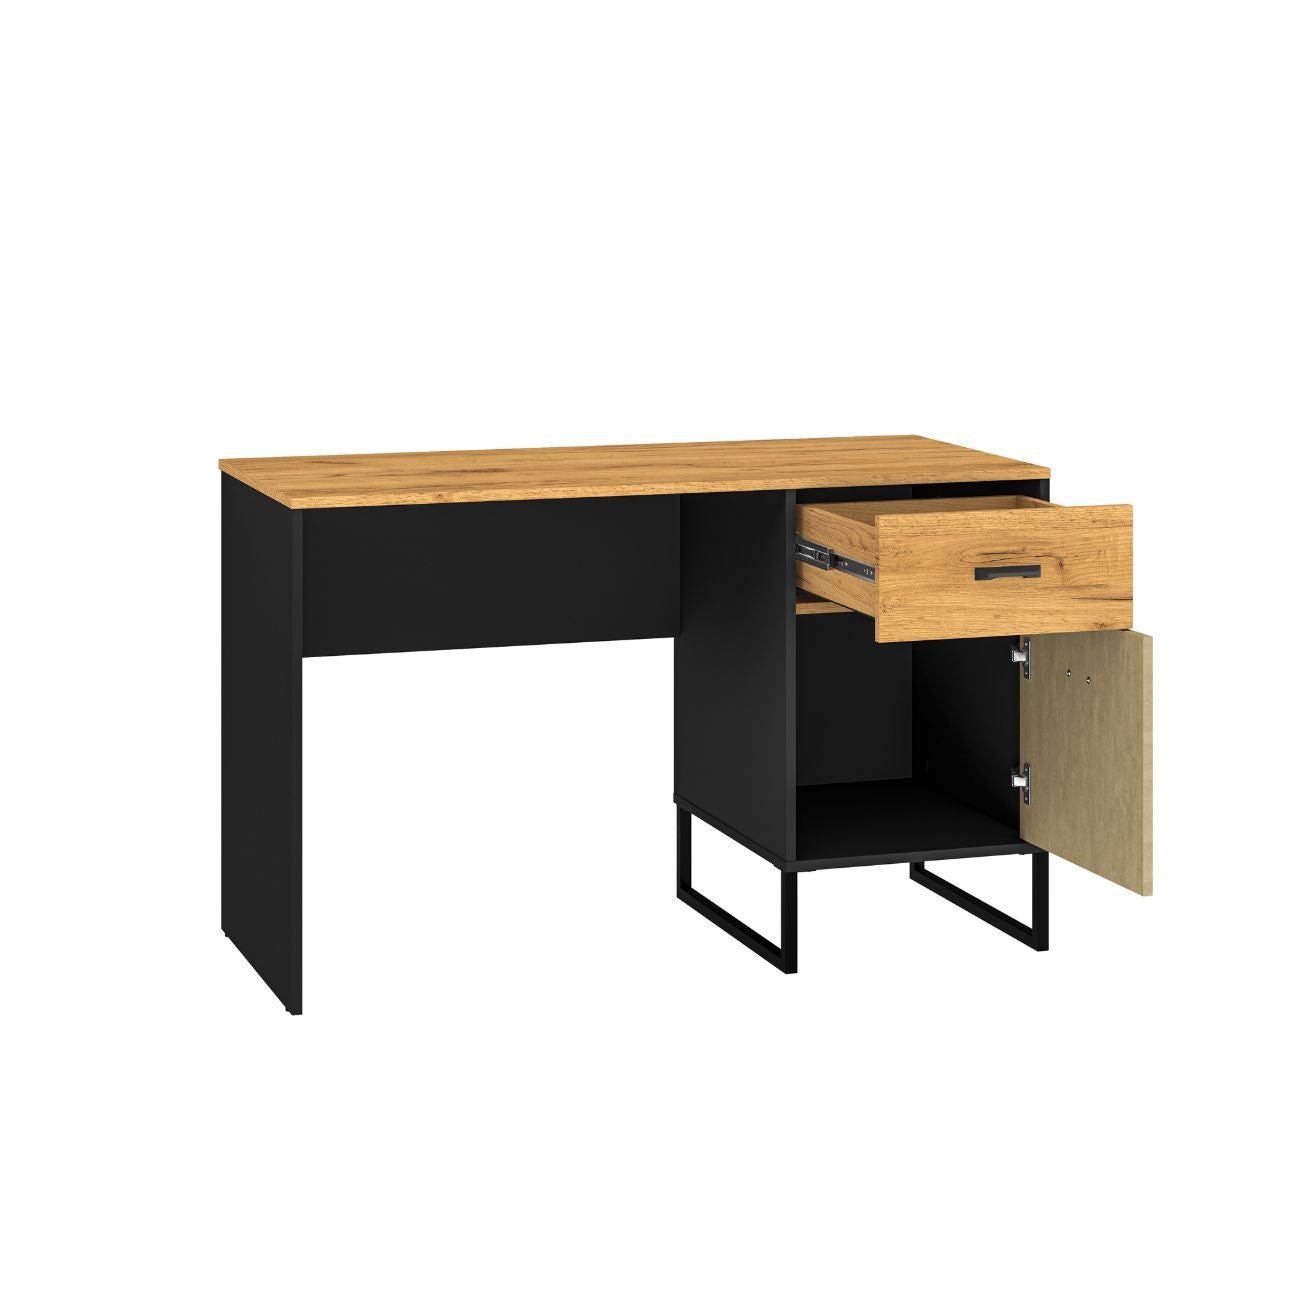 Zdjęcie przedstawiające nowoczesne biurko z szufladą oraz szafką w stylu loft. Modne biurko Kolt o szerokości 120 cm dostępne jest w dmsm.pl w niskiej cenie